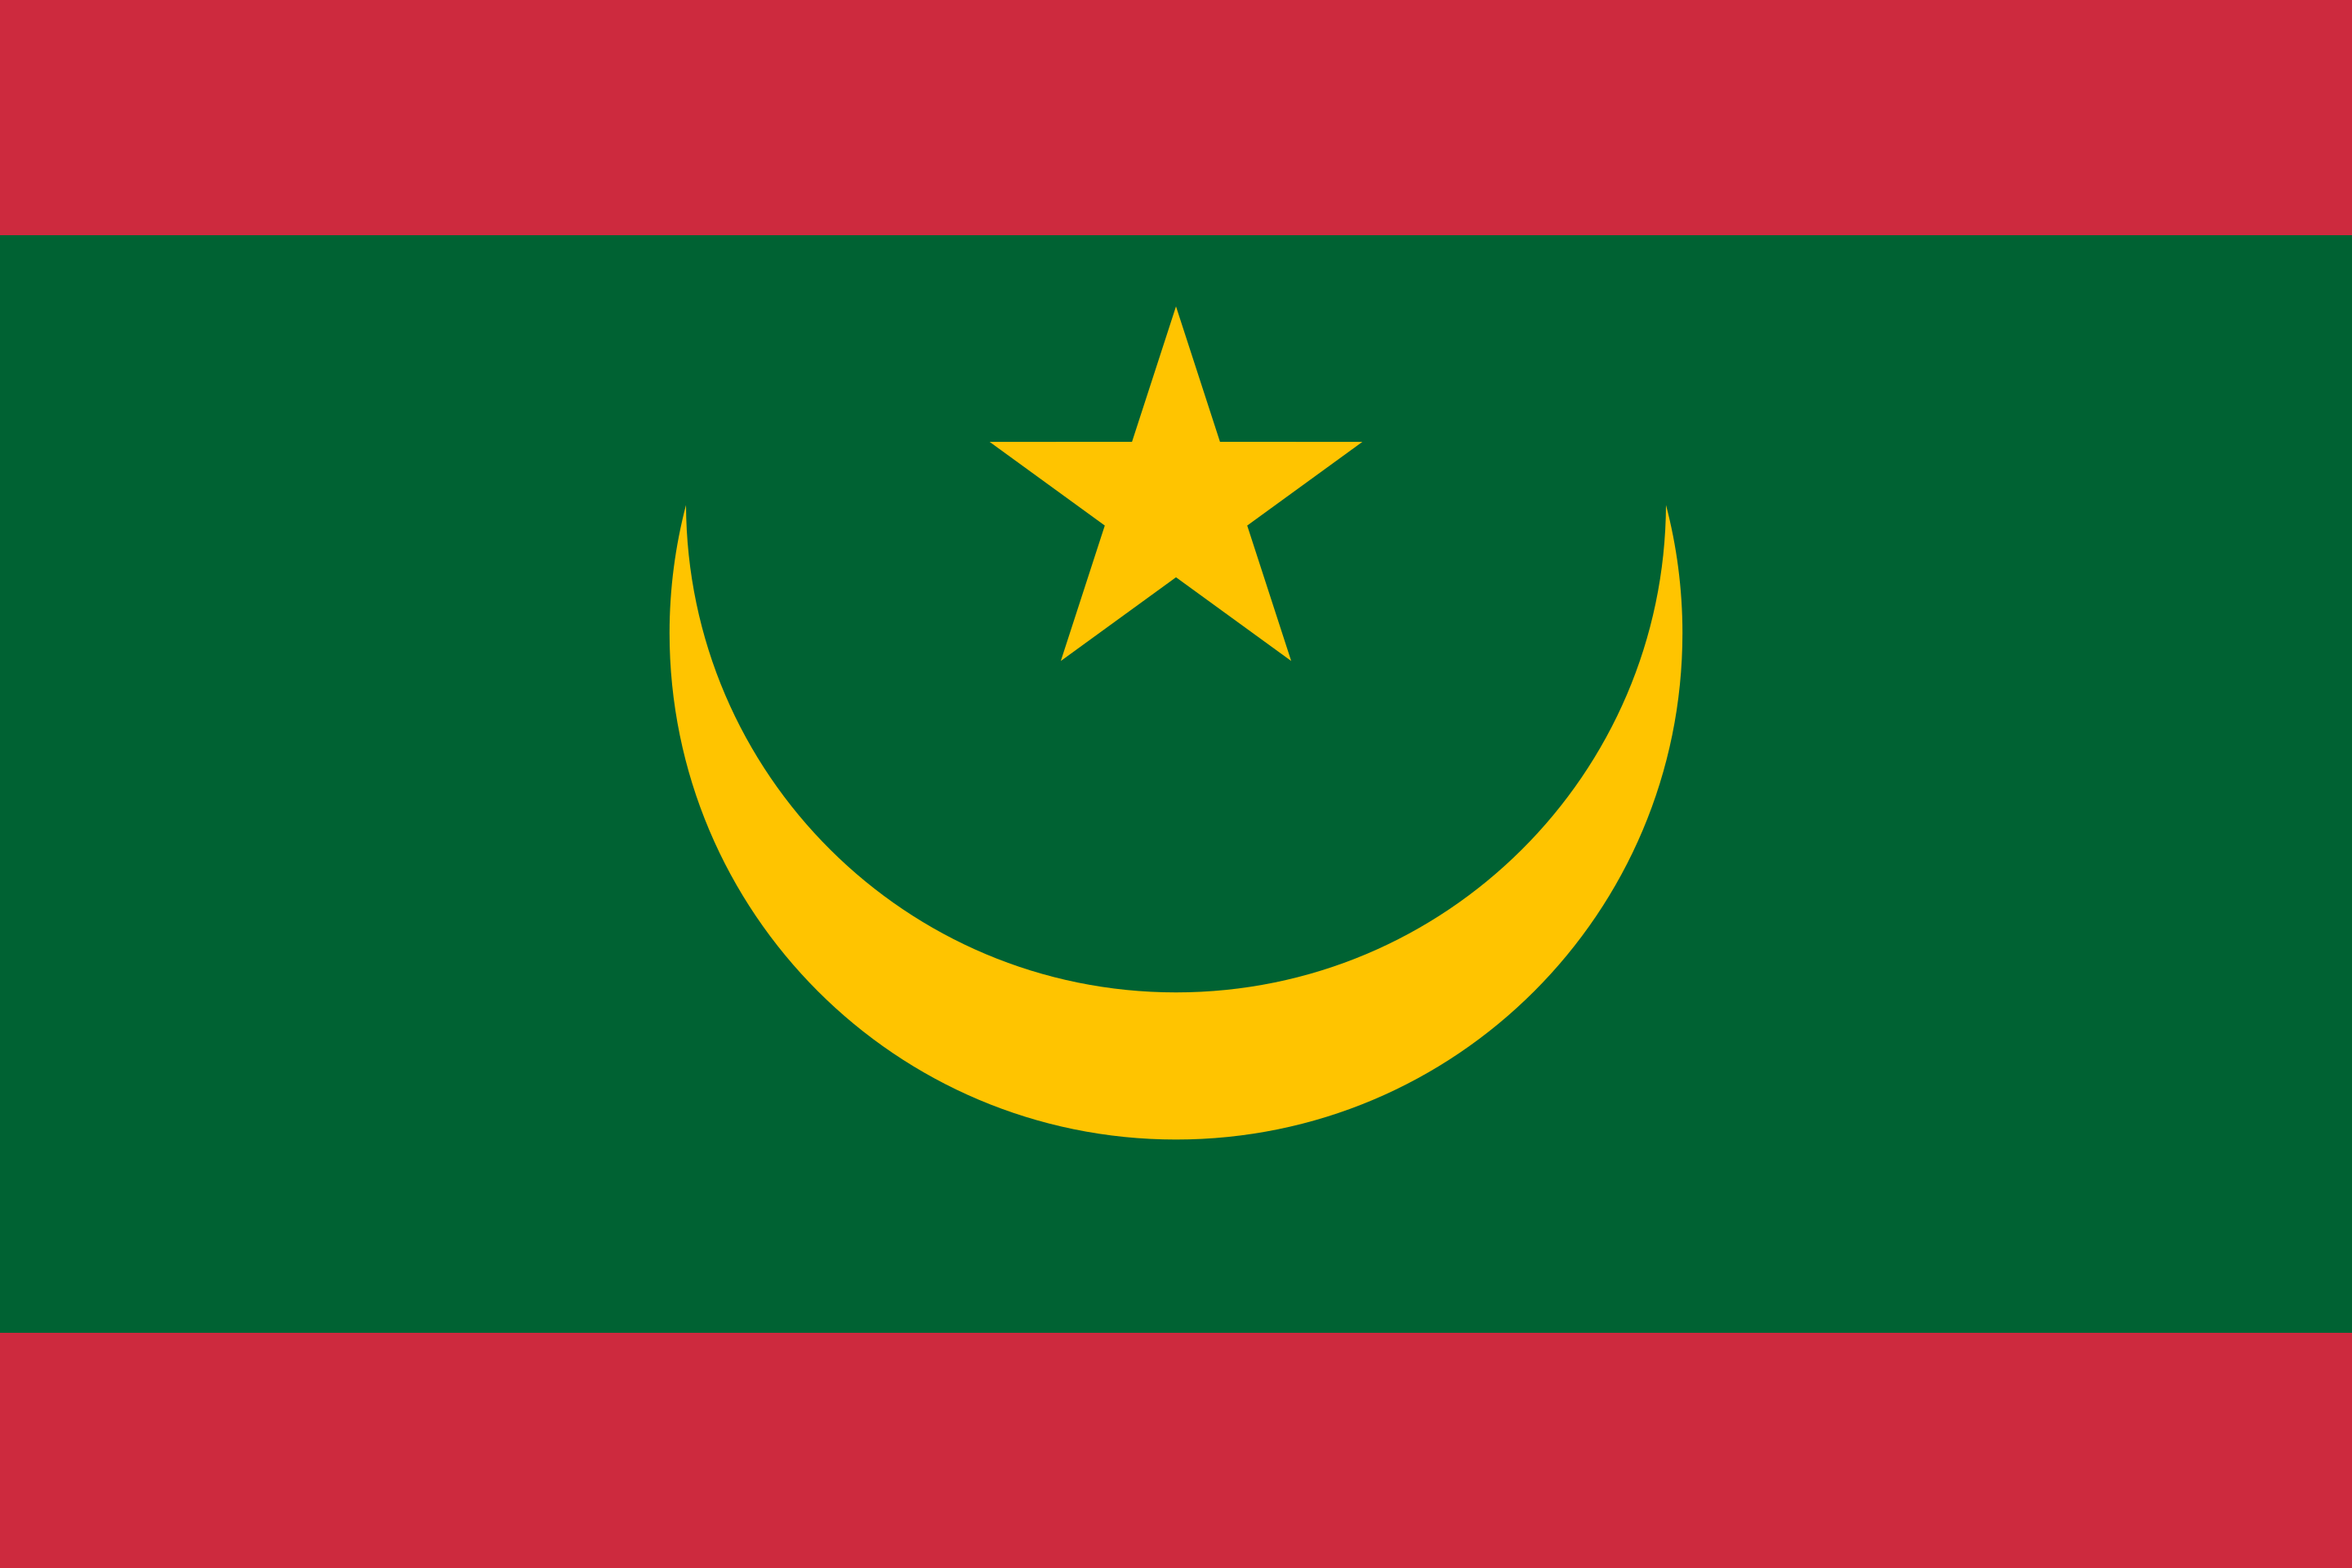 Boos Aarzelen Aap Weetjes over de vlag van Mauritanië - Stunningtravel